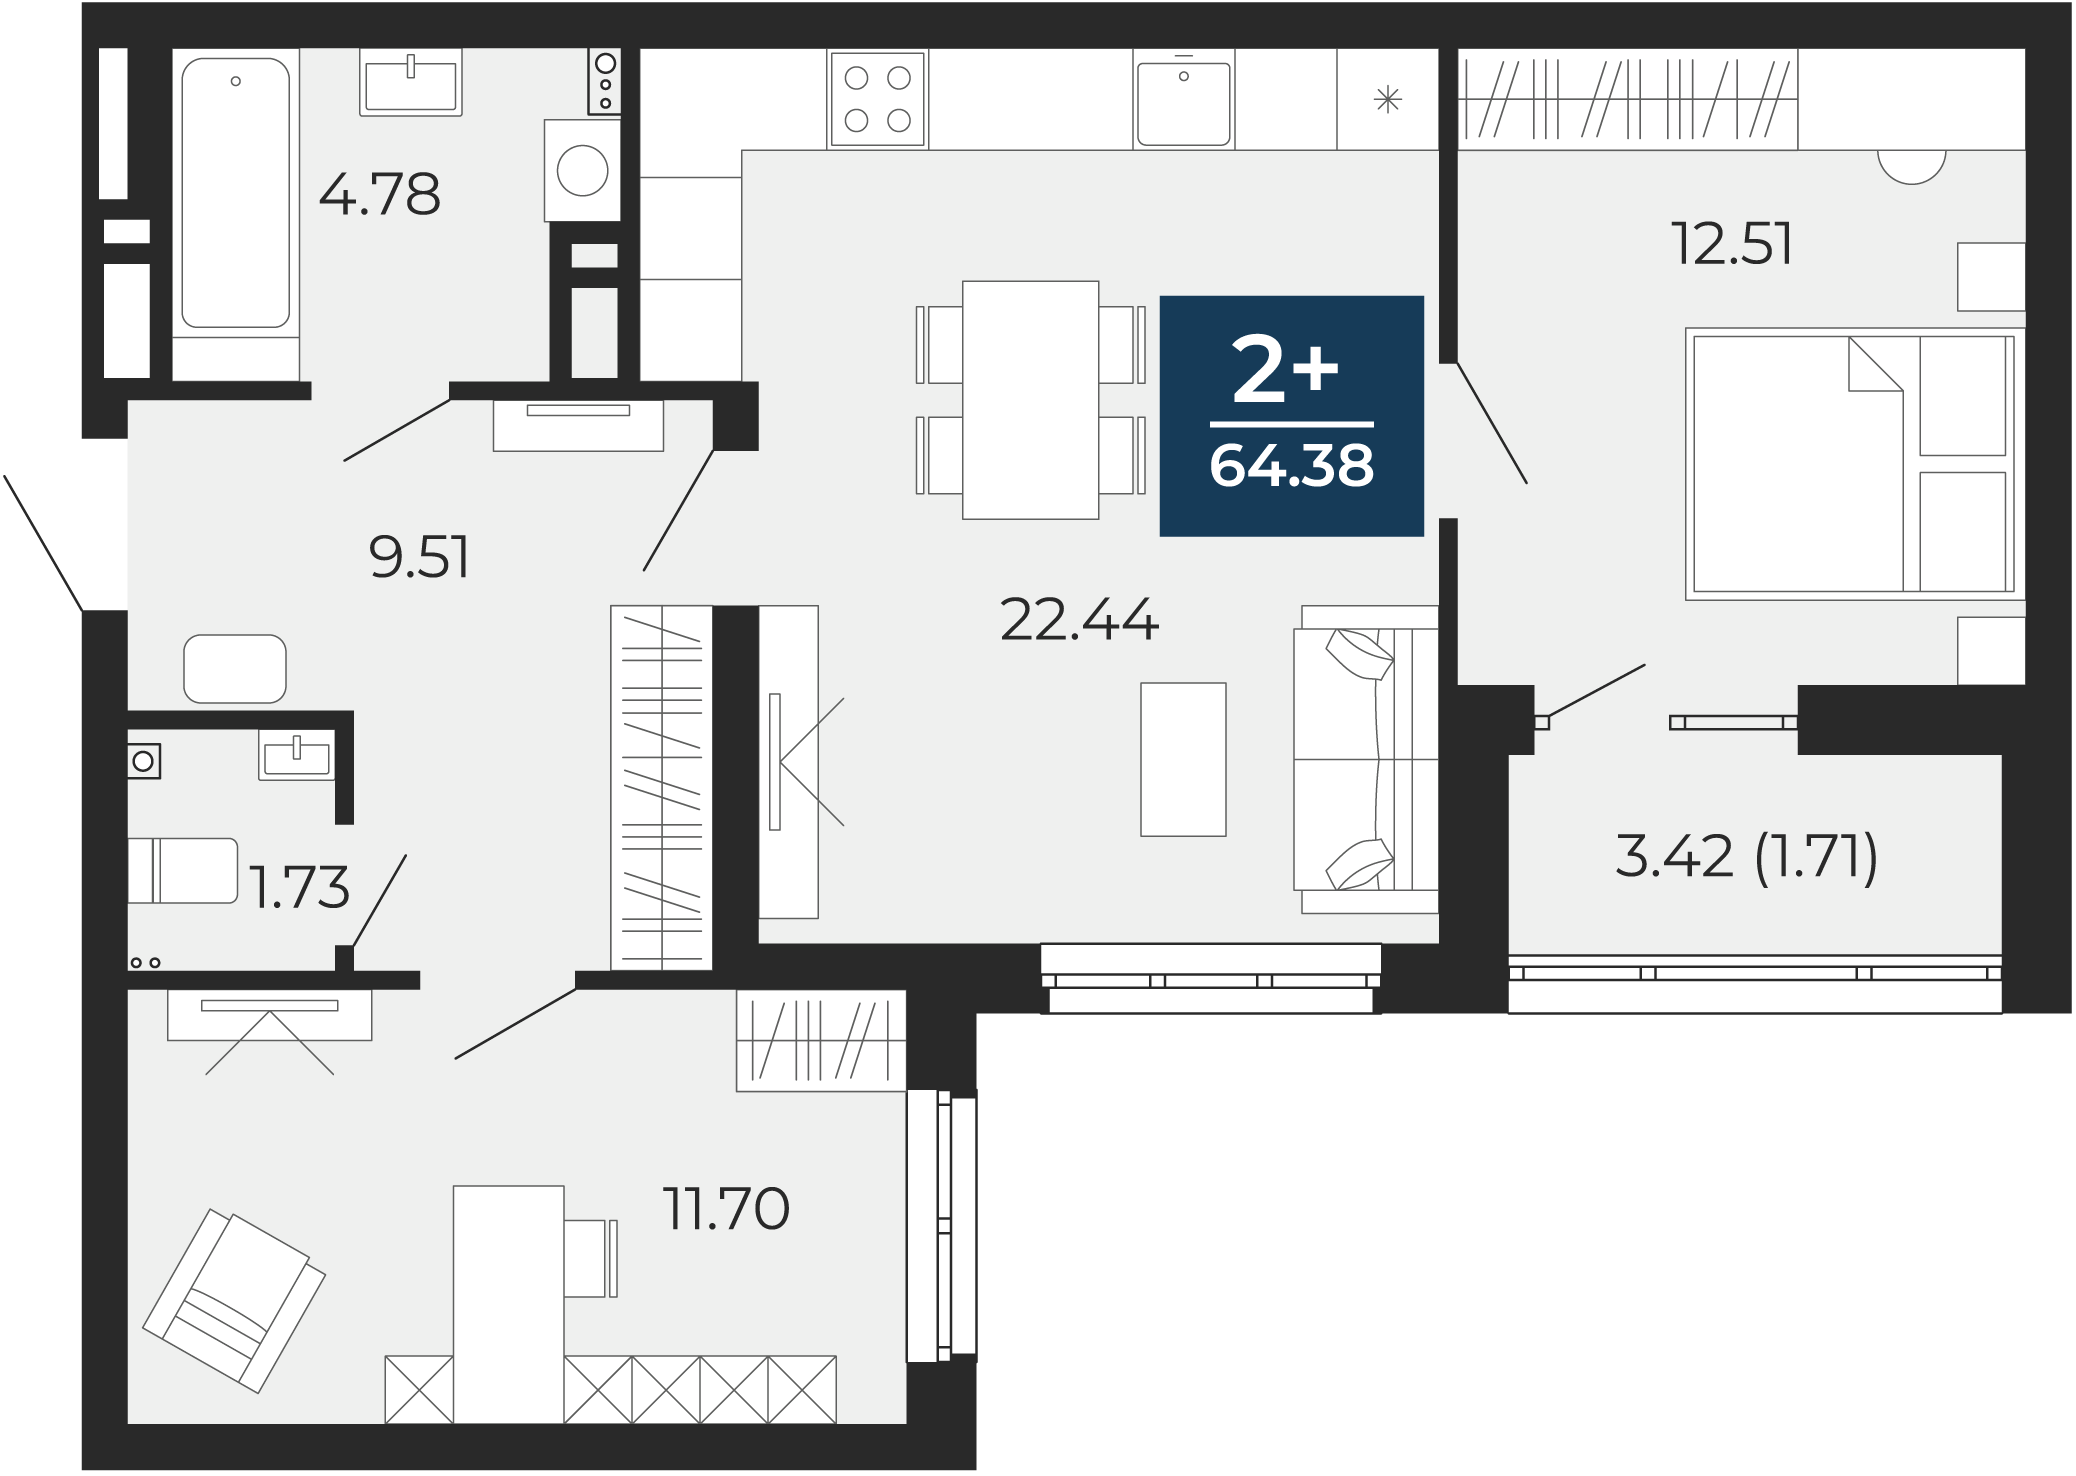 Квартира № 111, 2-комнатная, 64.38 кв. м, 2 этаж